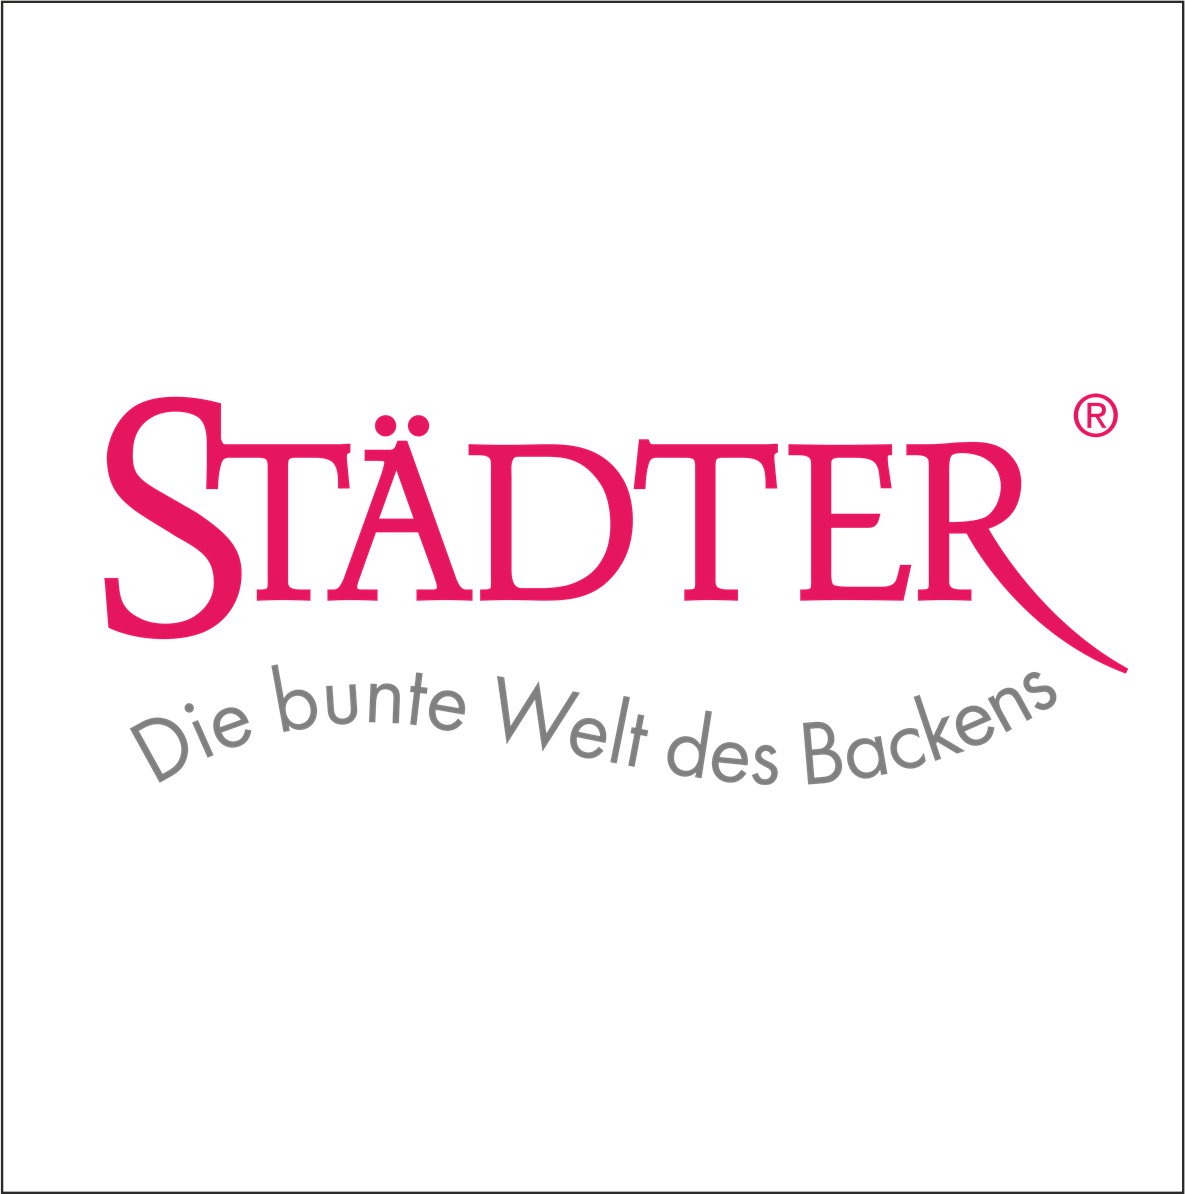 Städter GmbH